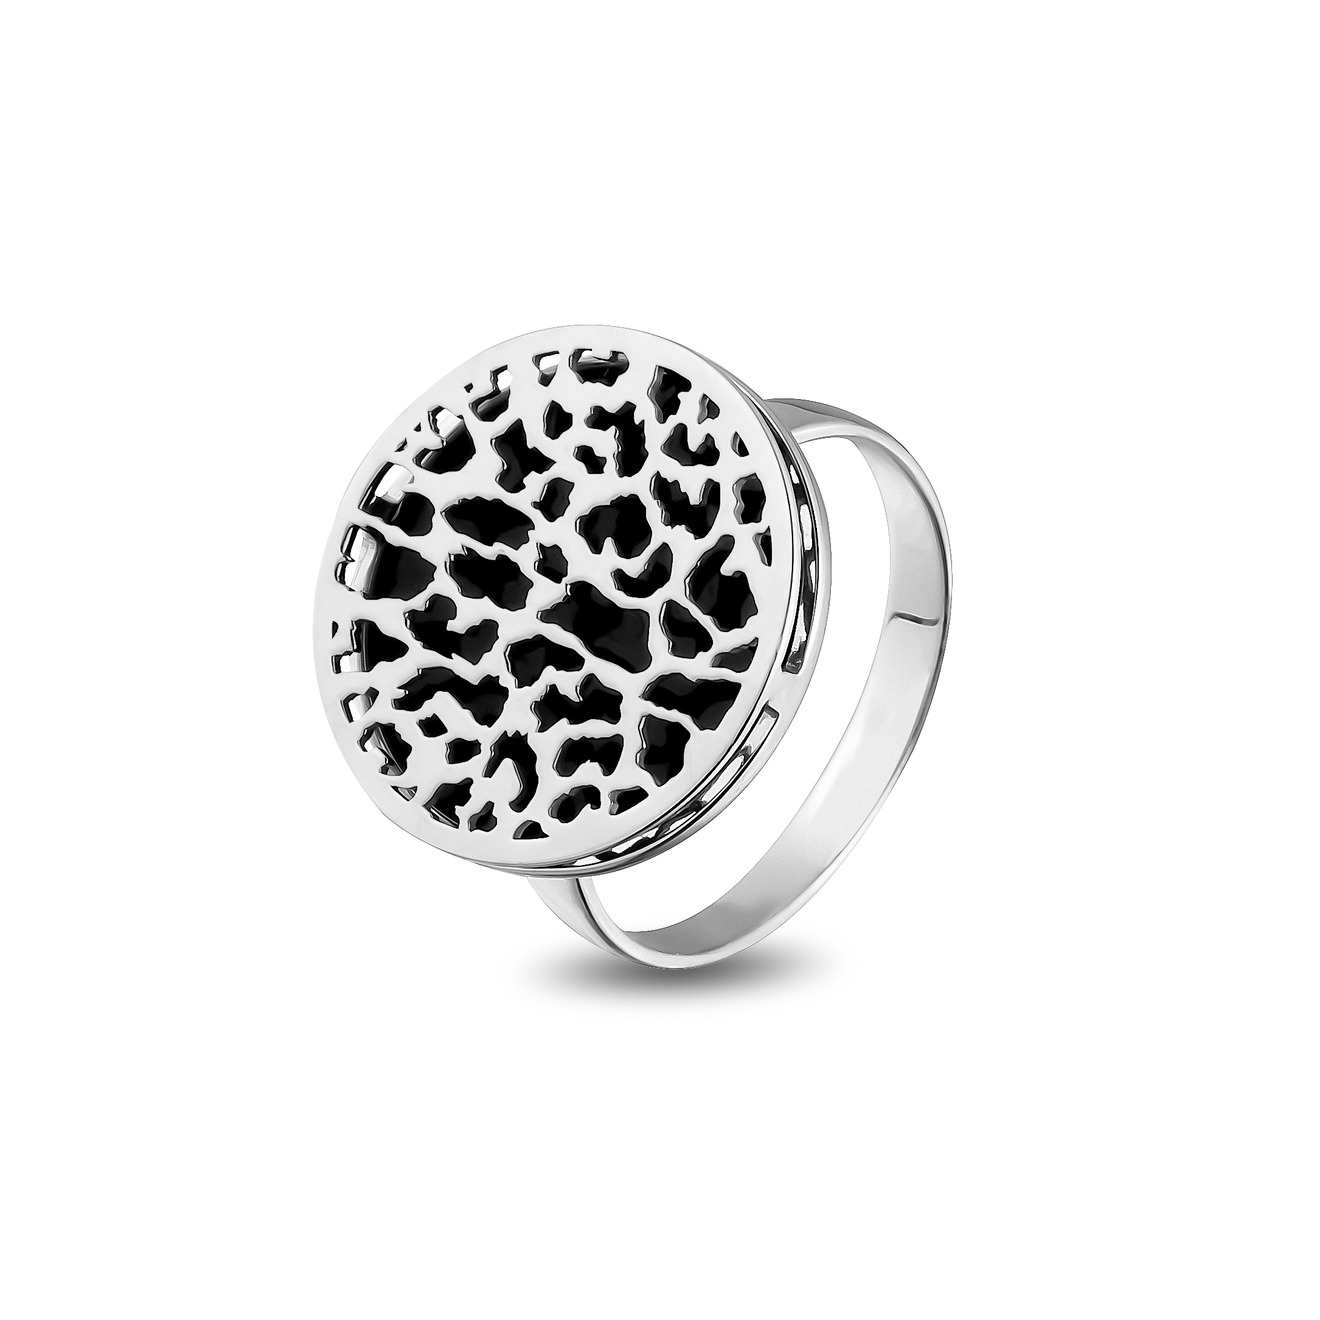 LUTA Jewelry Кольцо из серебра c леопардовым узором luta jewelry позолоченное кольцо из серебра c леопардовым узором